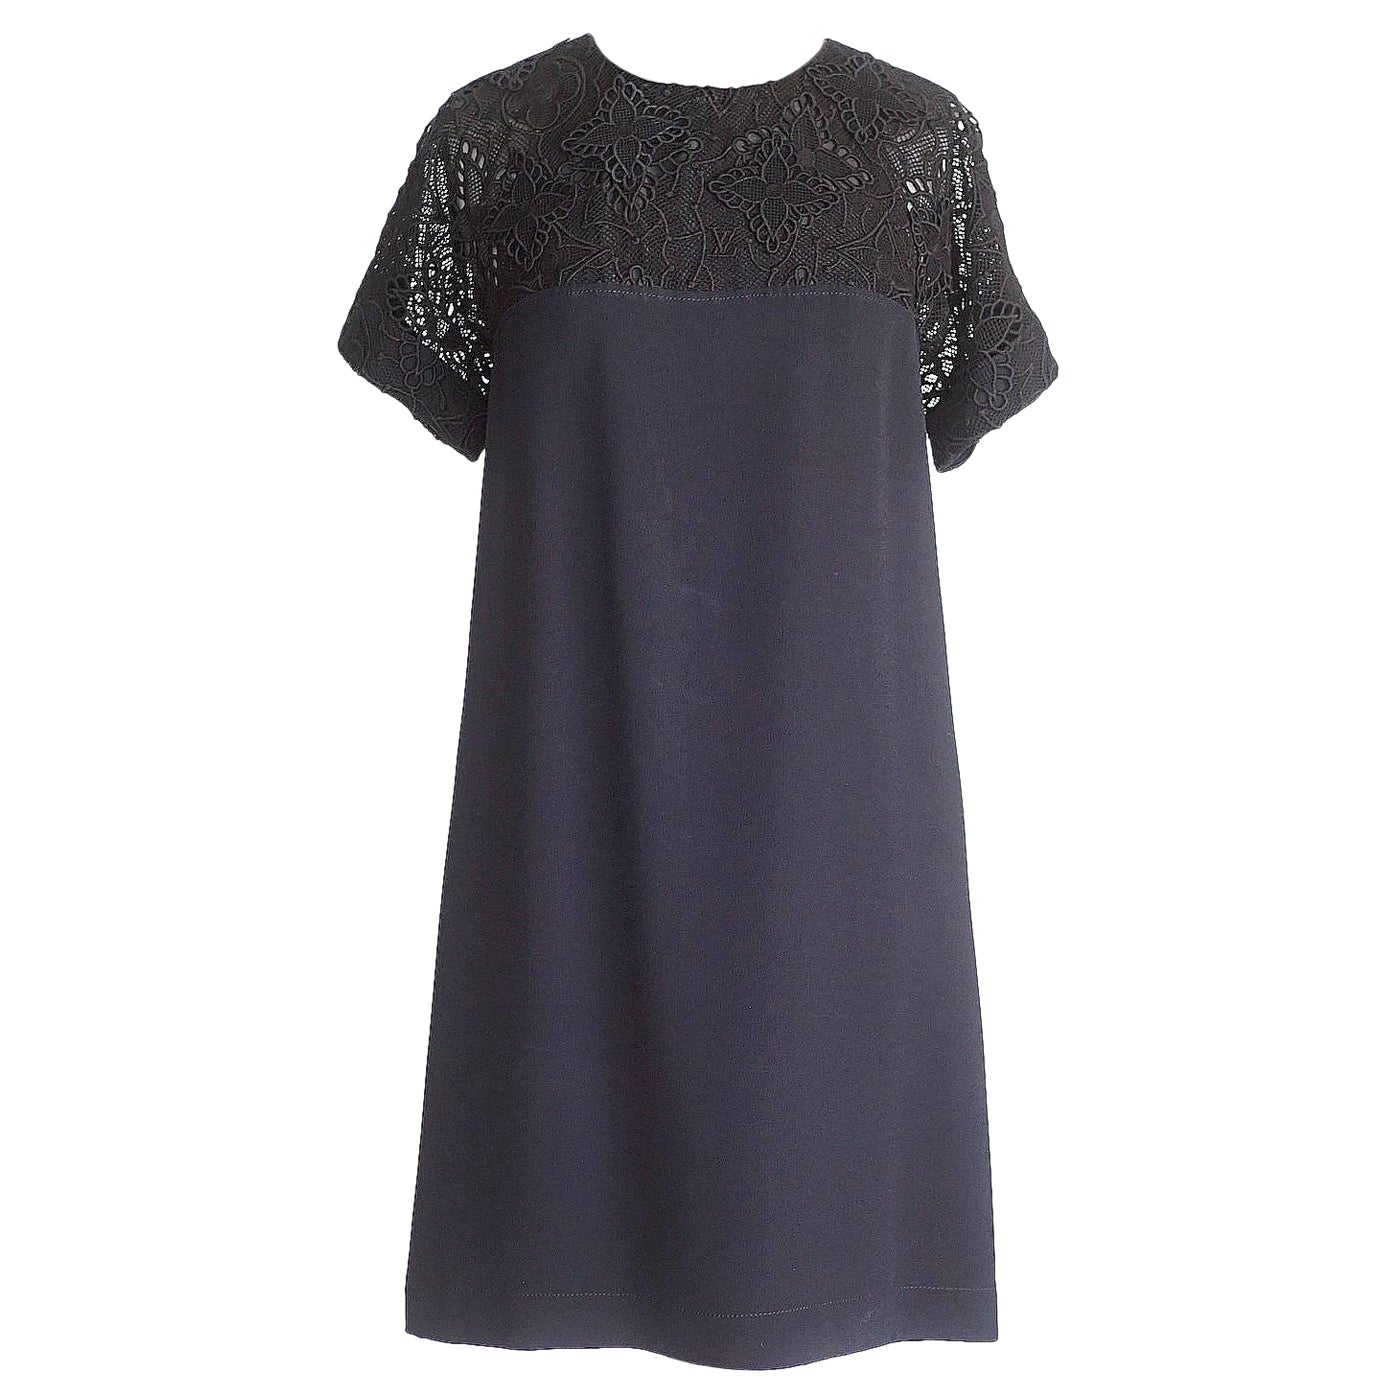 Louis Vuitton Dress Black Monogram Lace Detail  36 / 4 New For Sale